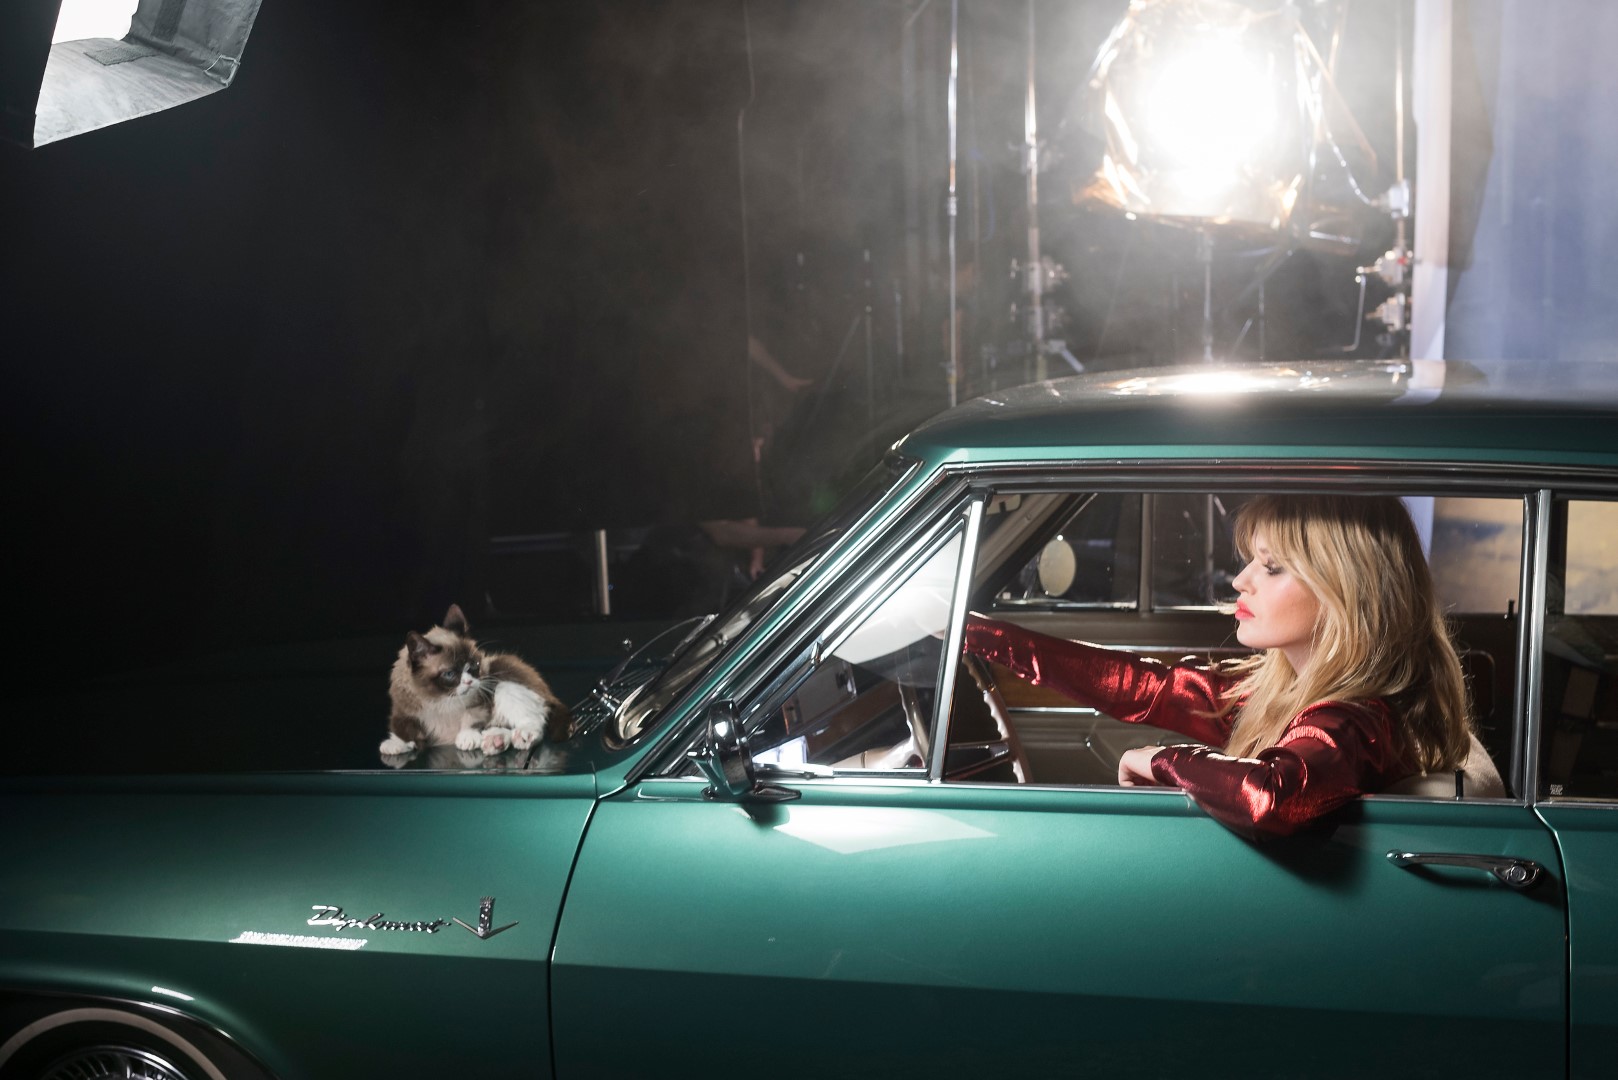 Calendario Opel 2017: protagonisti Georgia May Jagger e “Grumpy Cat”, gli scatti di Ellen von Unwerth